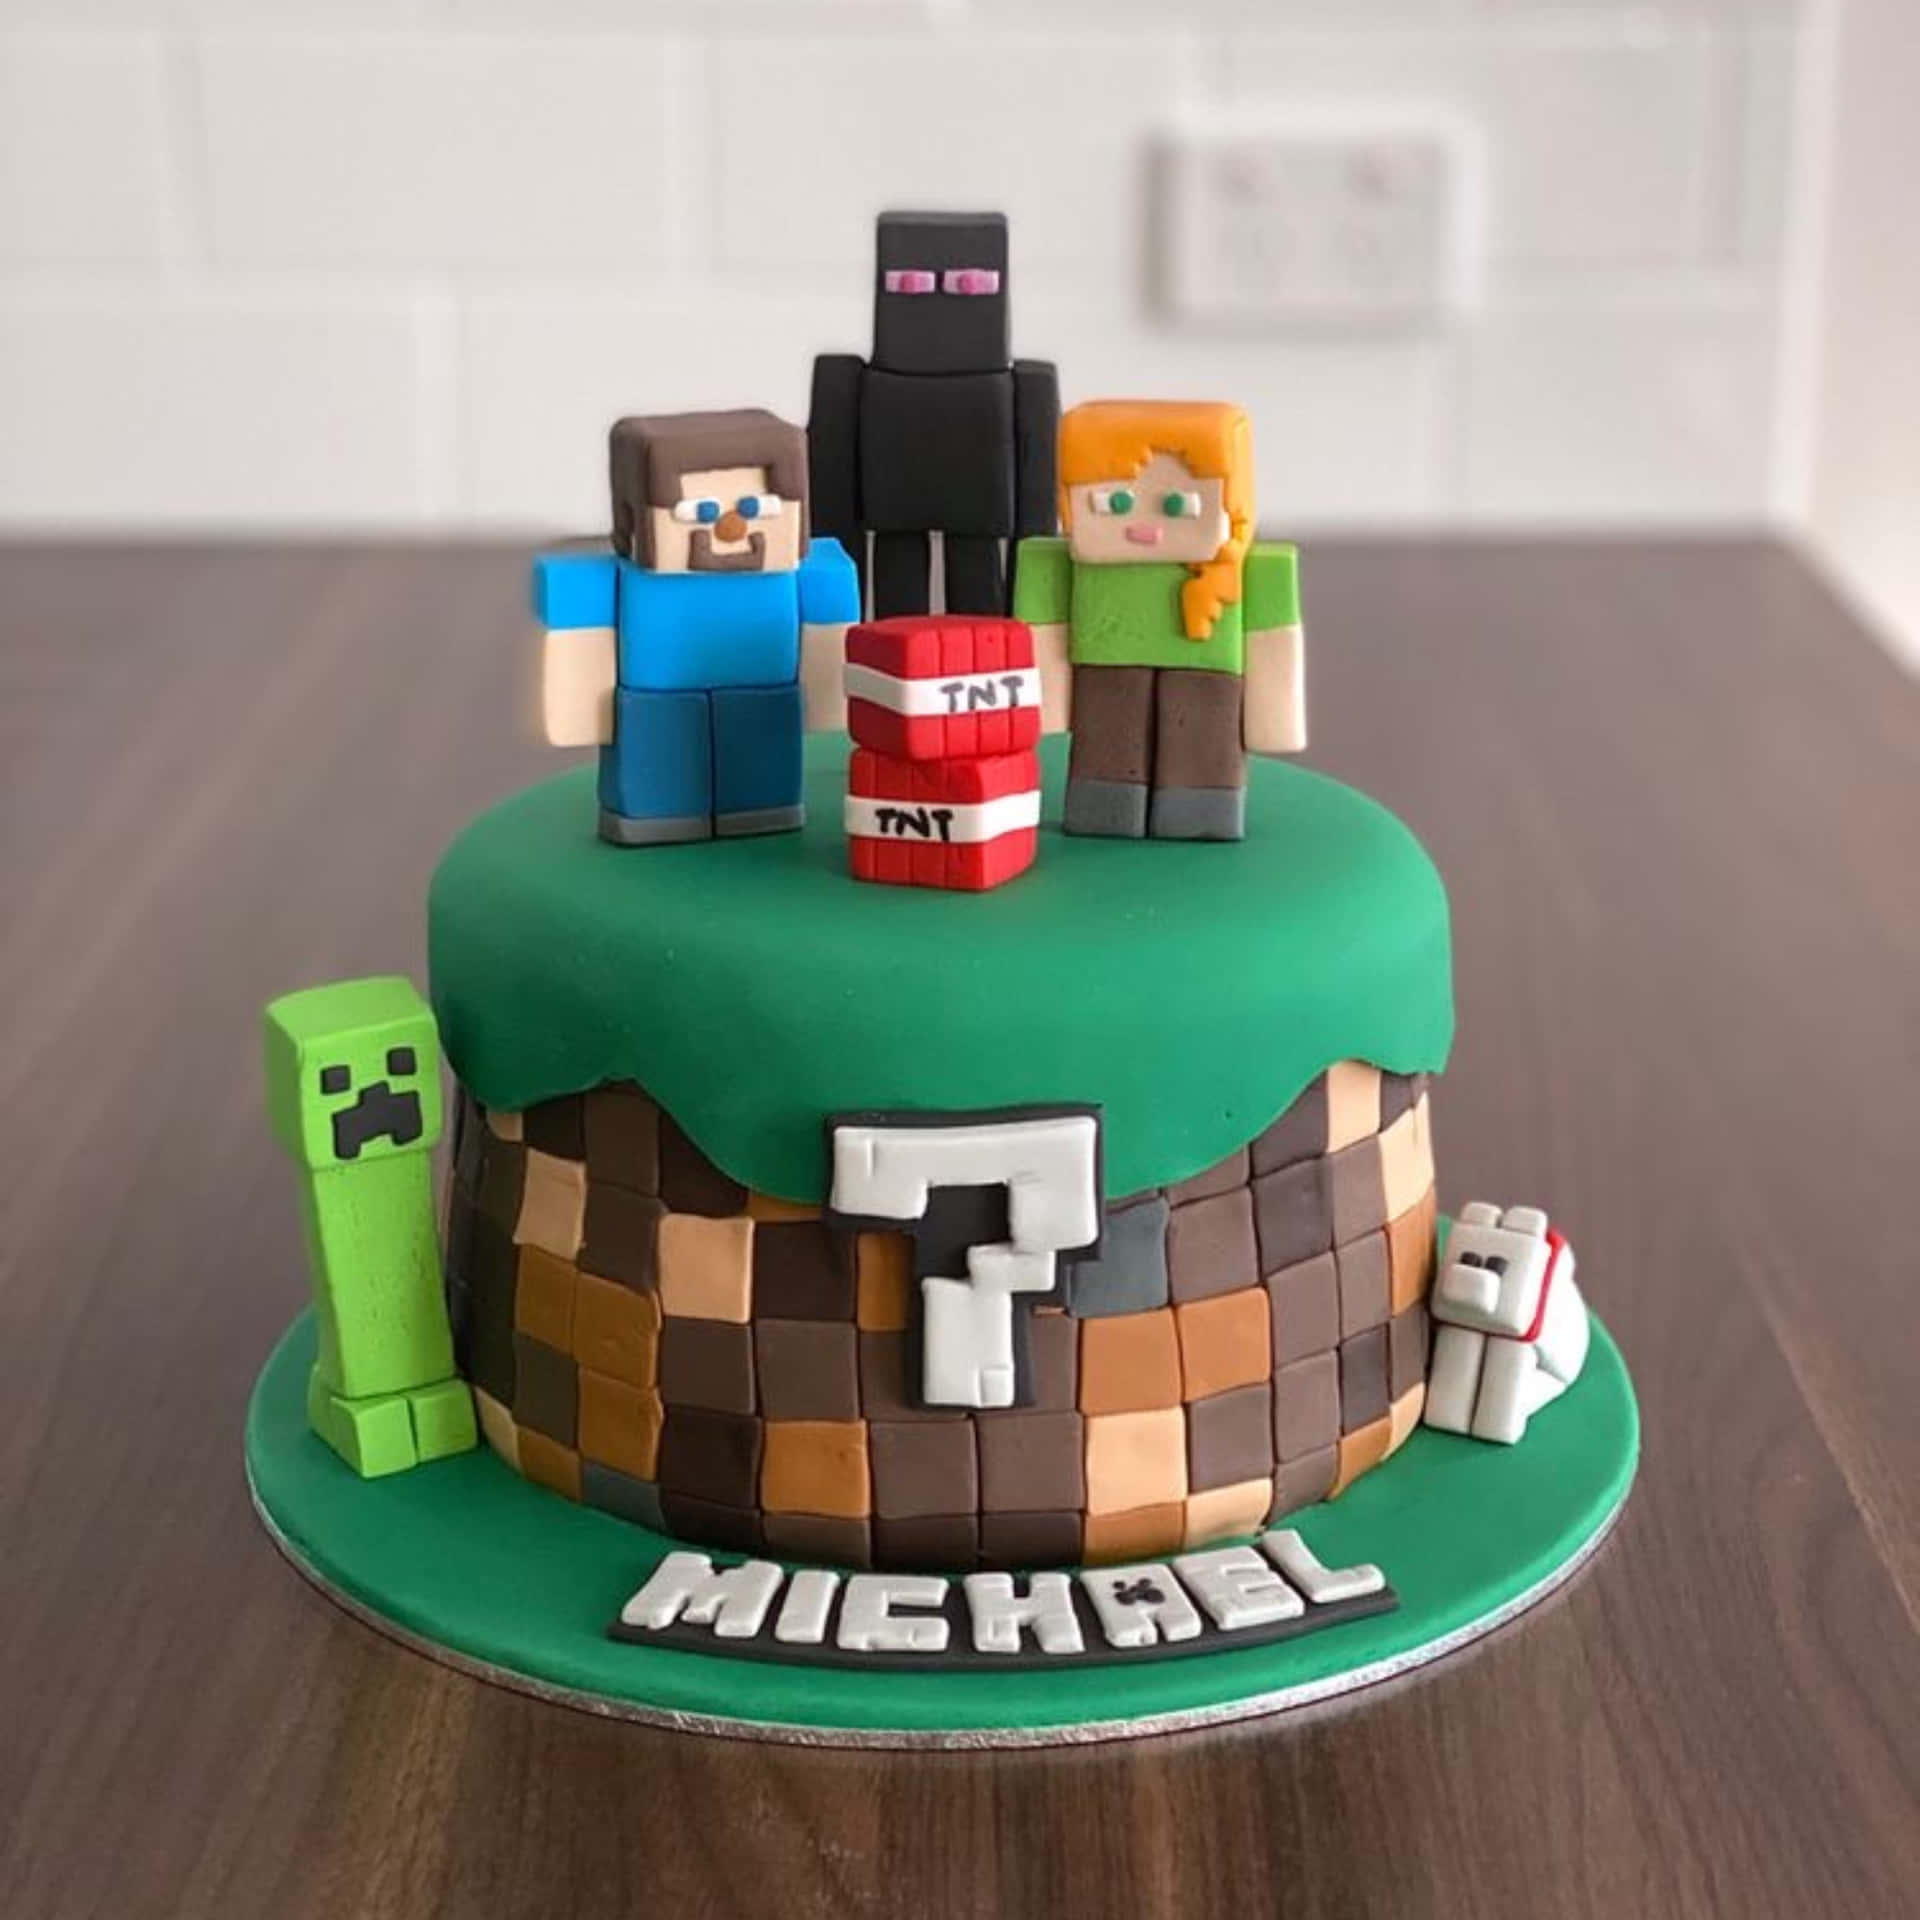 Läckertutsökta - Anpassade Minecraft-tårtor För Att Fira!